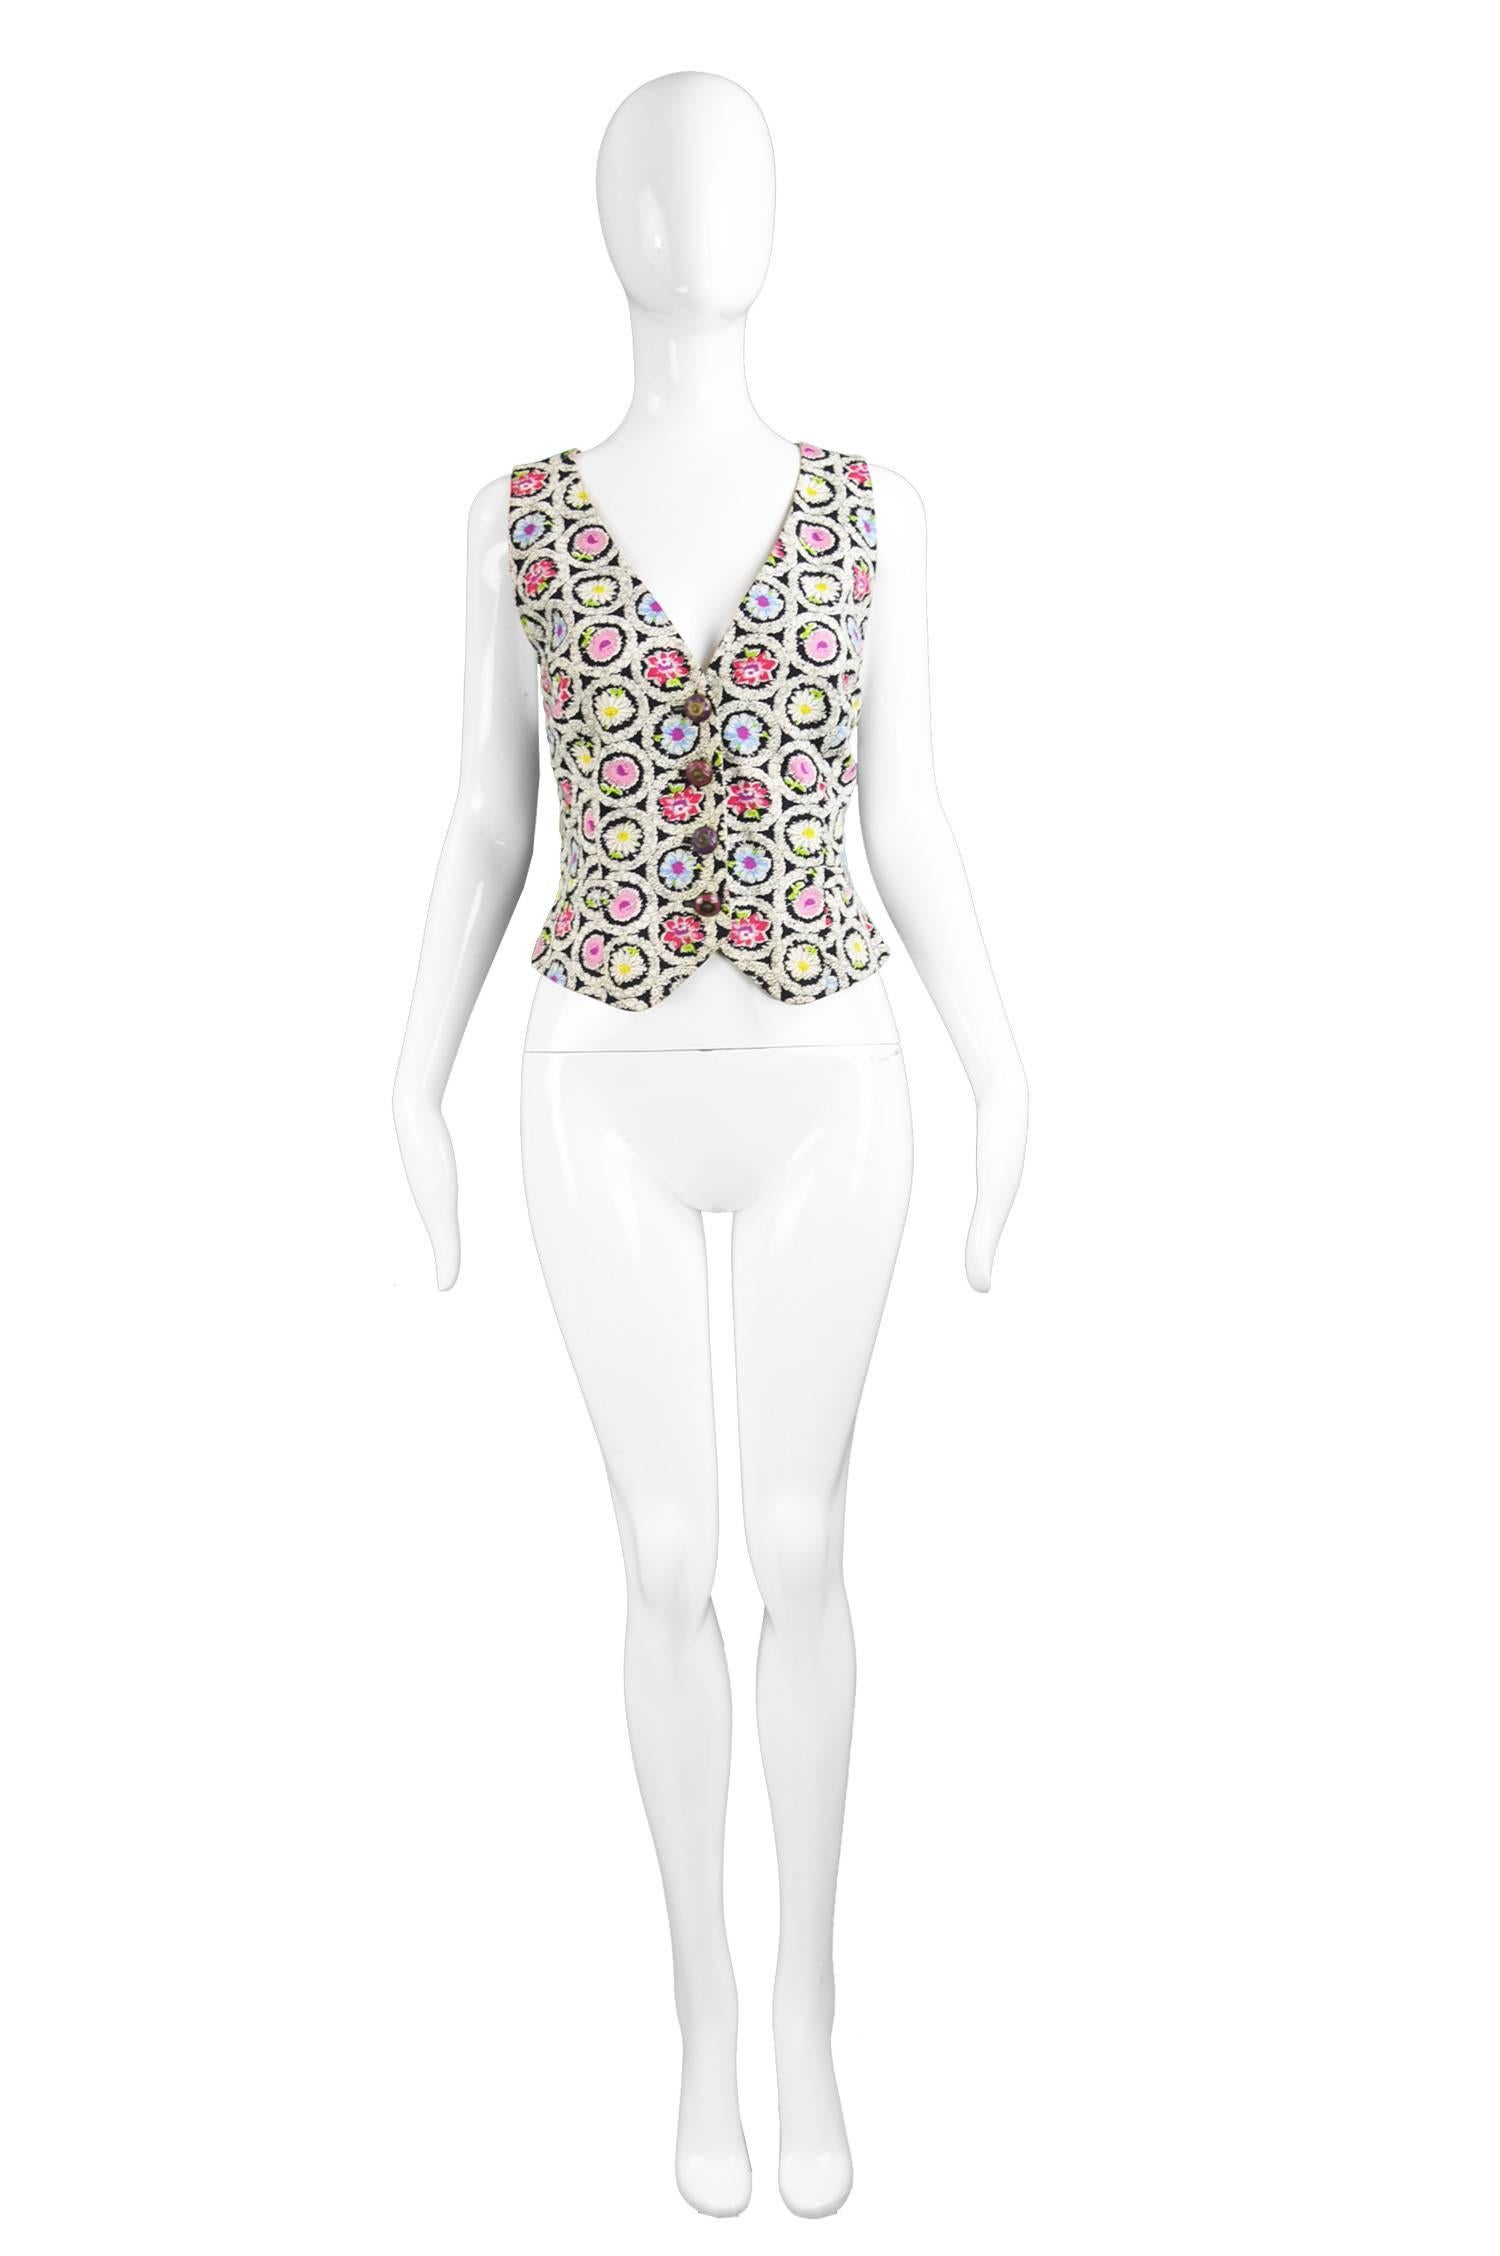 Moschino Cheap & Chic Black & White Floral Cross Back Cotton Vest, 1990s 

Estimated Size: UK 10-12/ US 6-8/ EU 38-40. Please check measurements. 
Bust - 35” / 89cm
Waist - 30” / 76cm
Length (Shoulder to Hem) - 20” / 51cm
 
Condition: